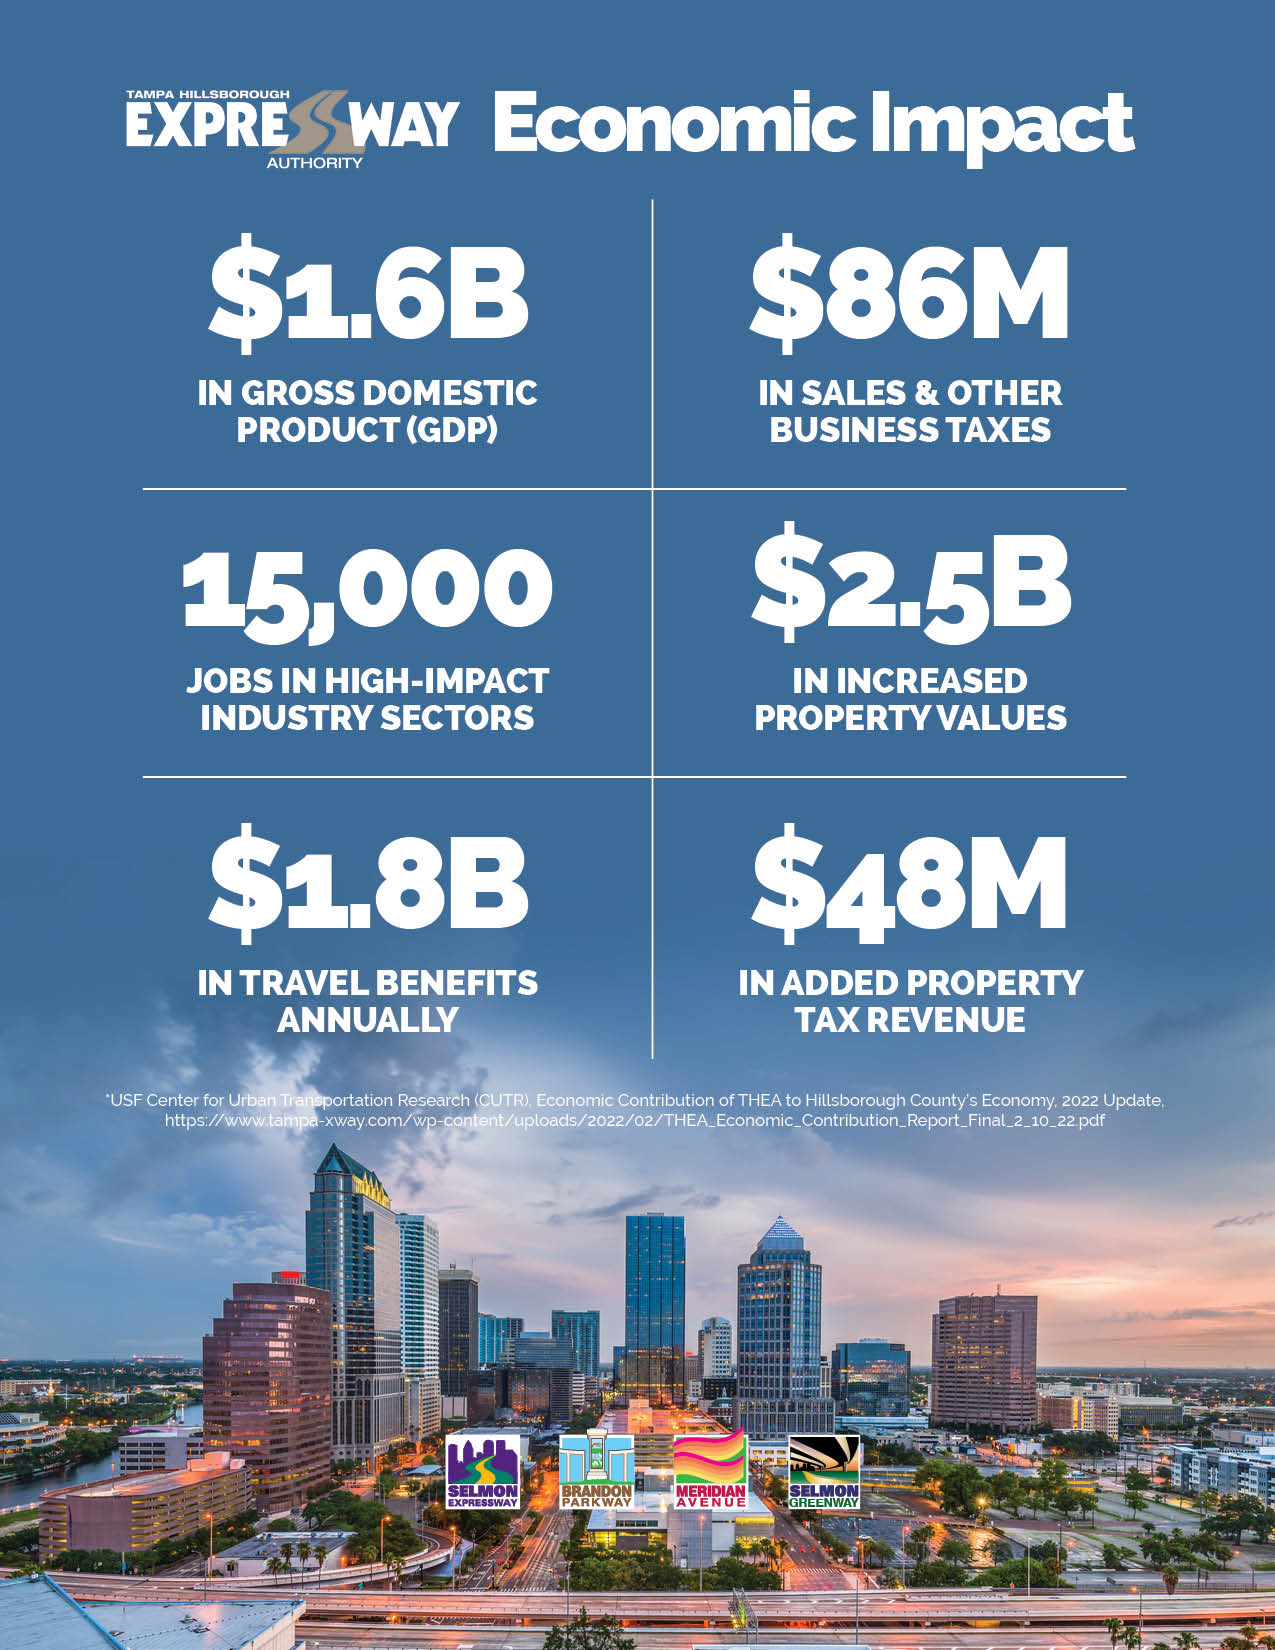 Tampa Hillsborough Expressway Authority Generates $1.6 Billion In Local Economic Impact pic